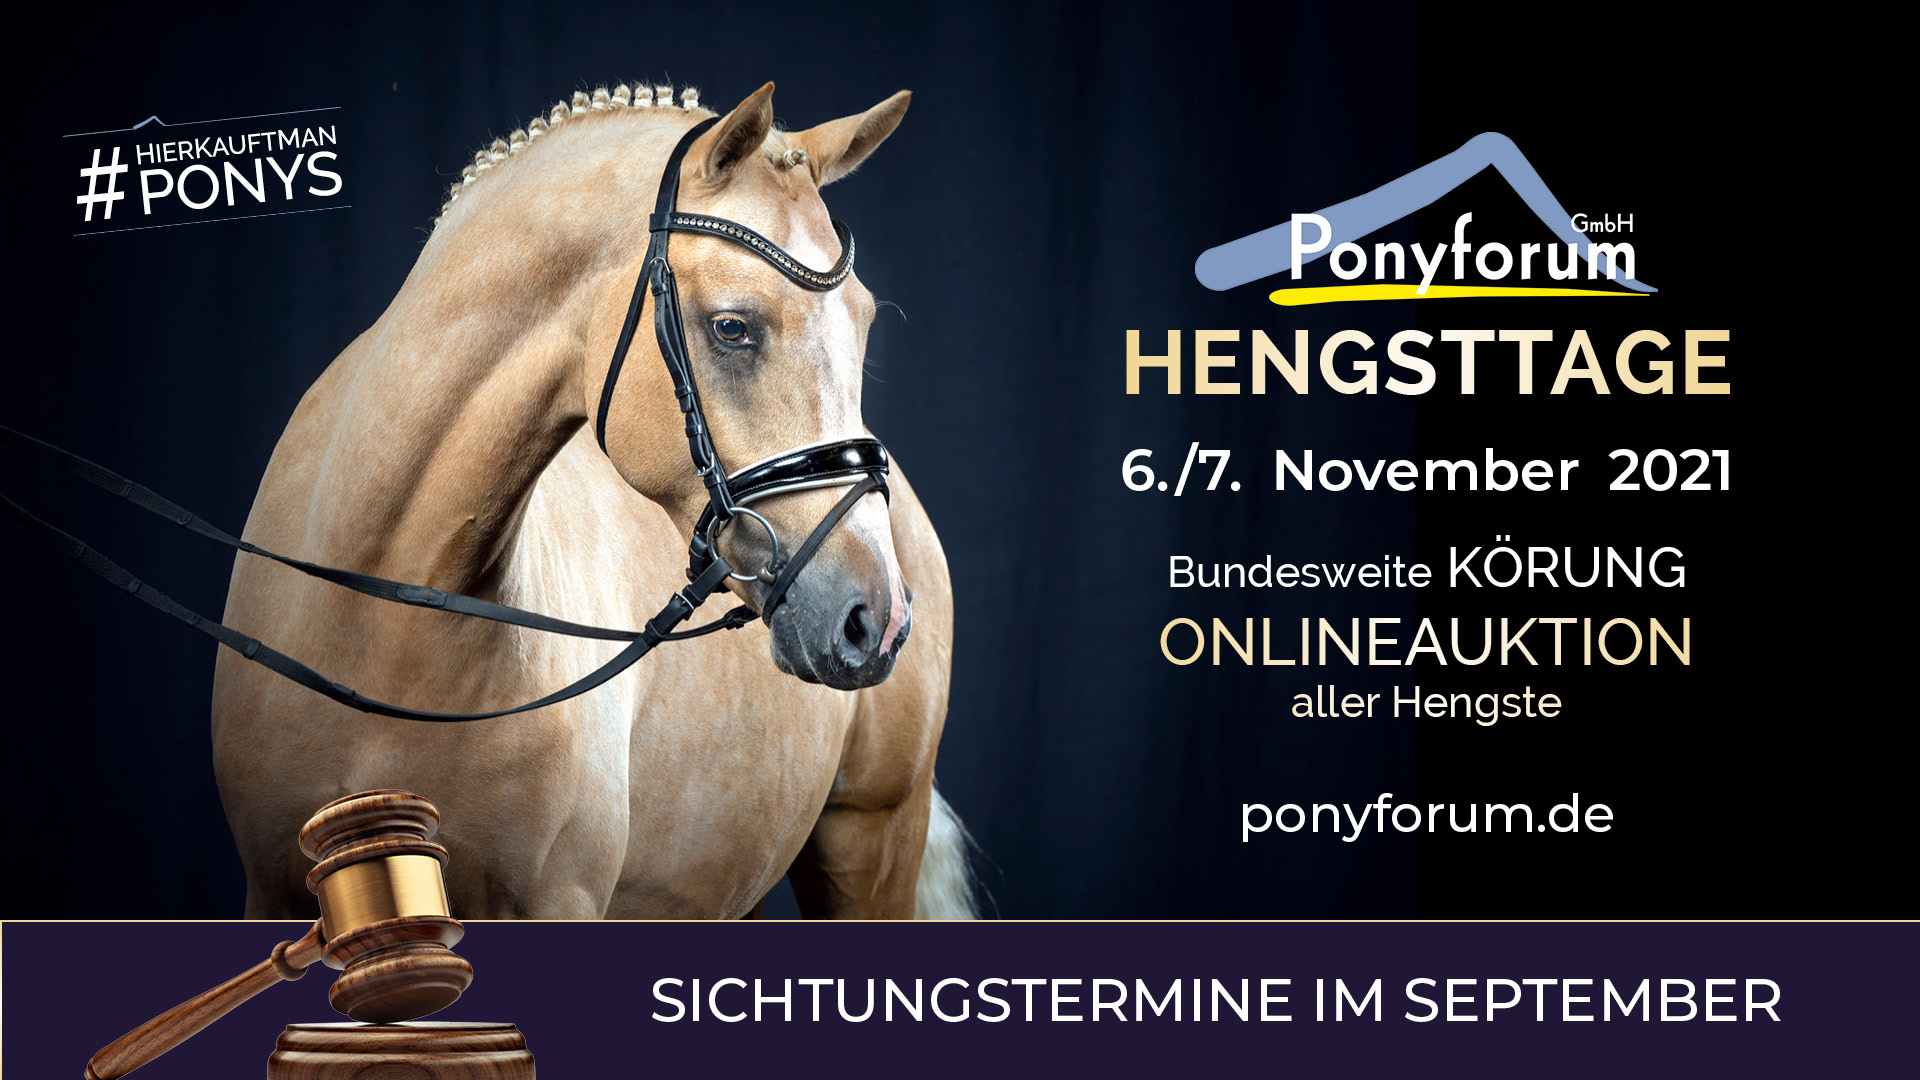 Ponyforum Hengsttage 2021